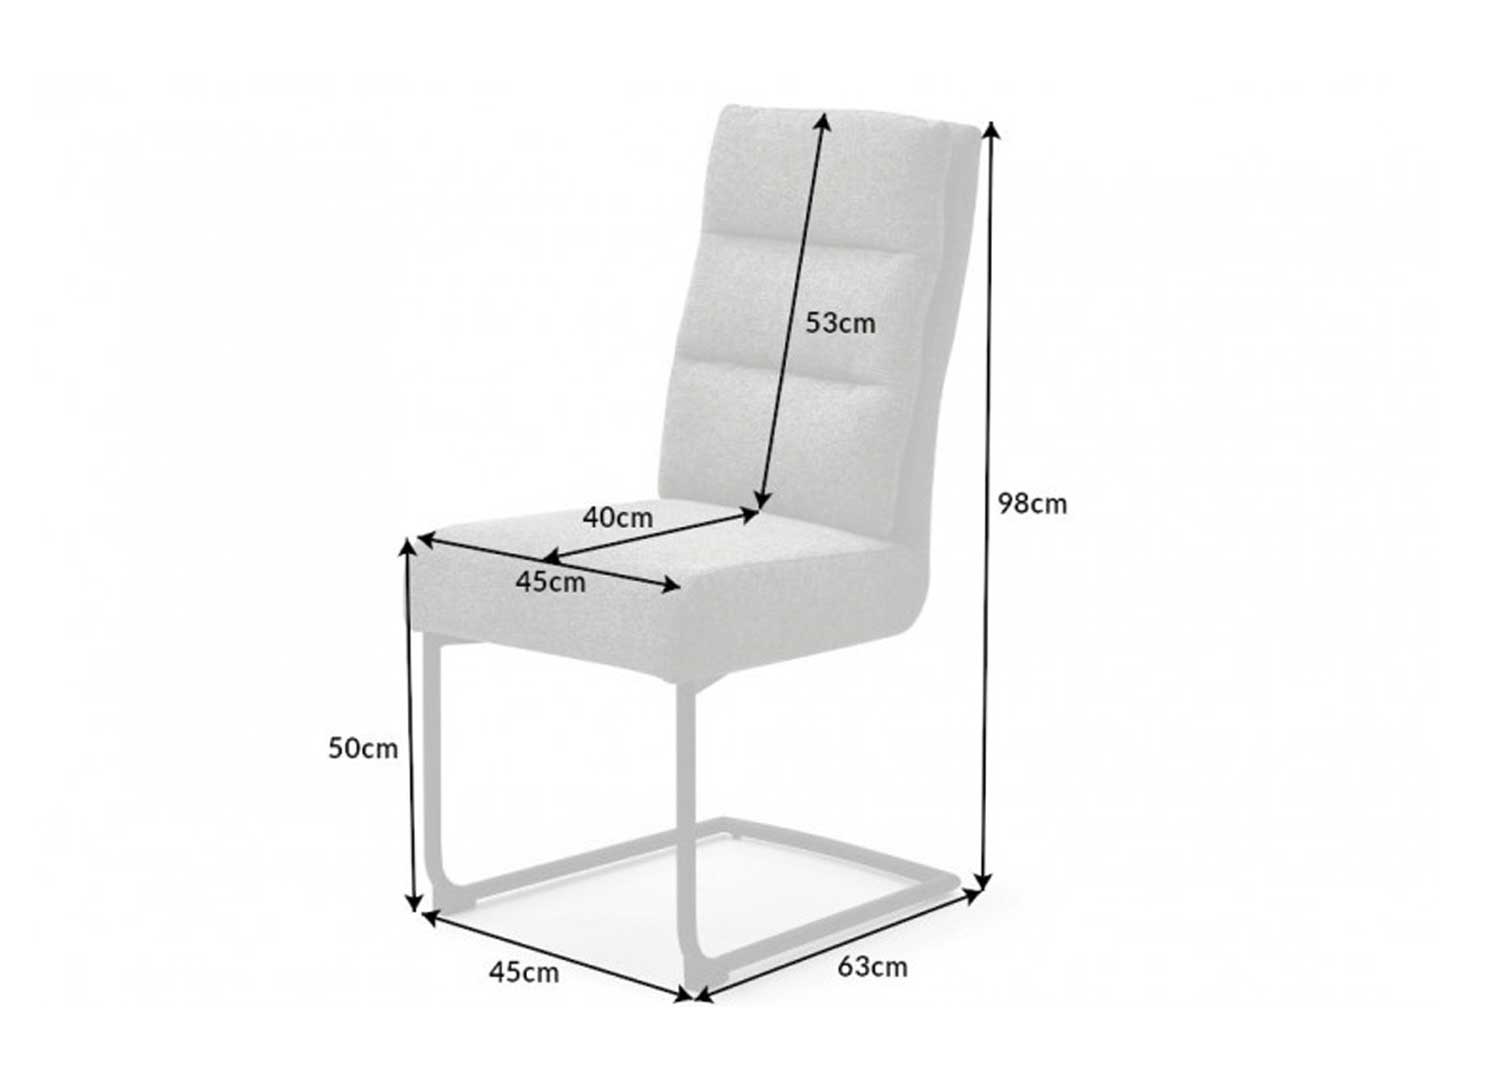 détails des dimensions de la chaise cantilever